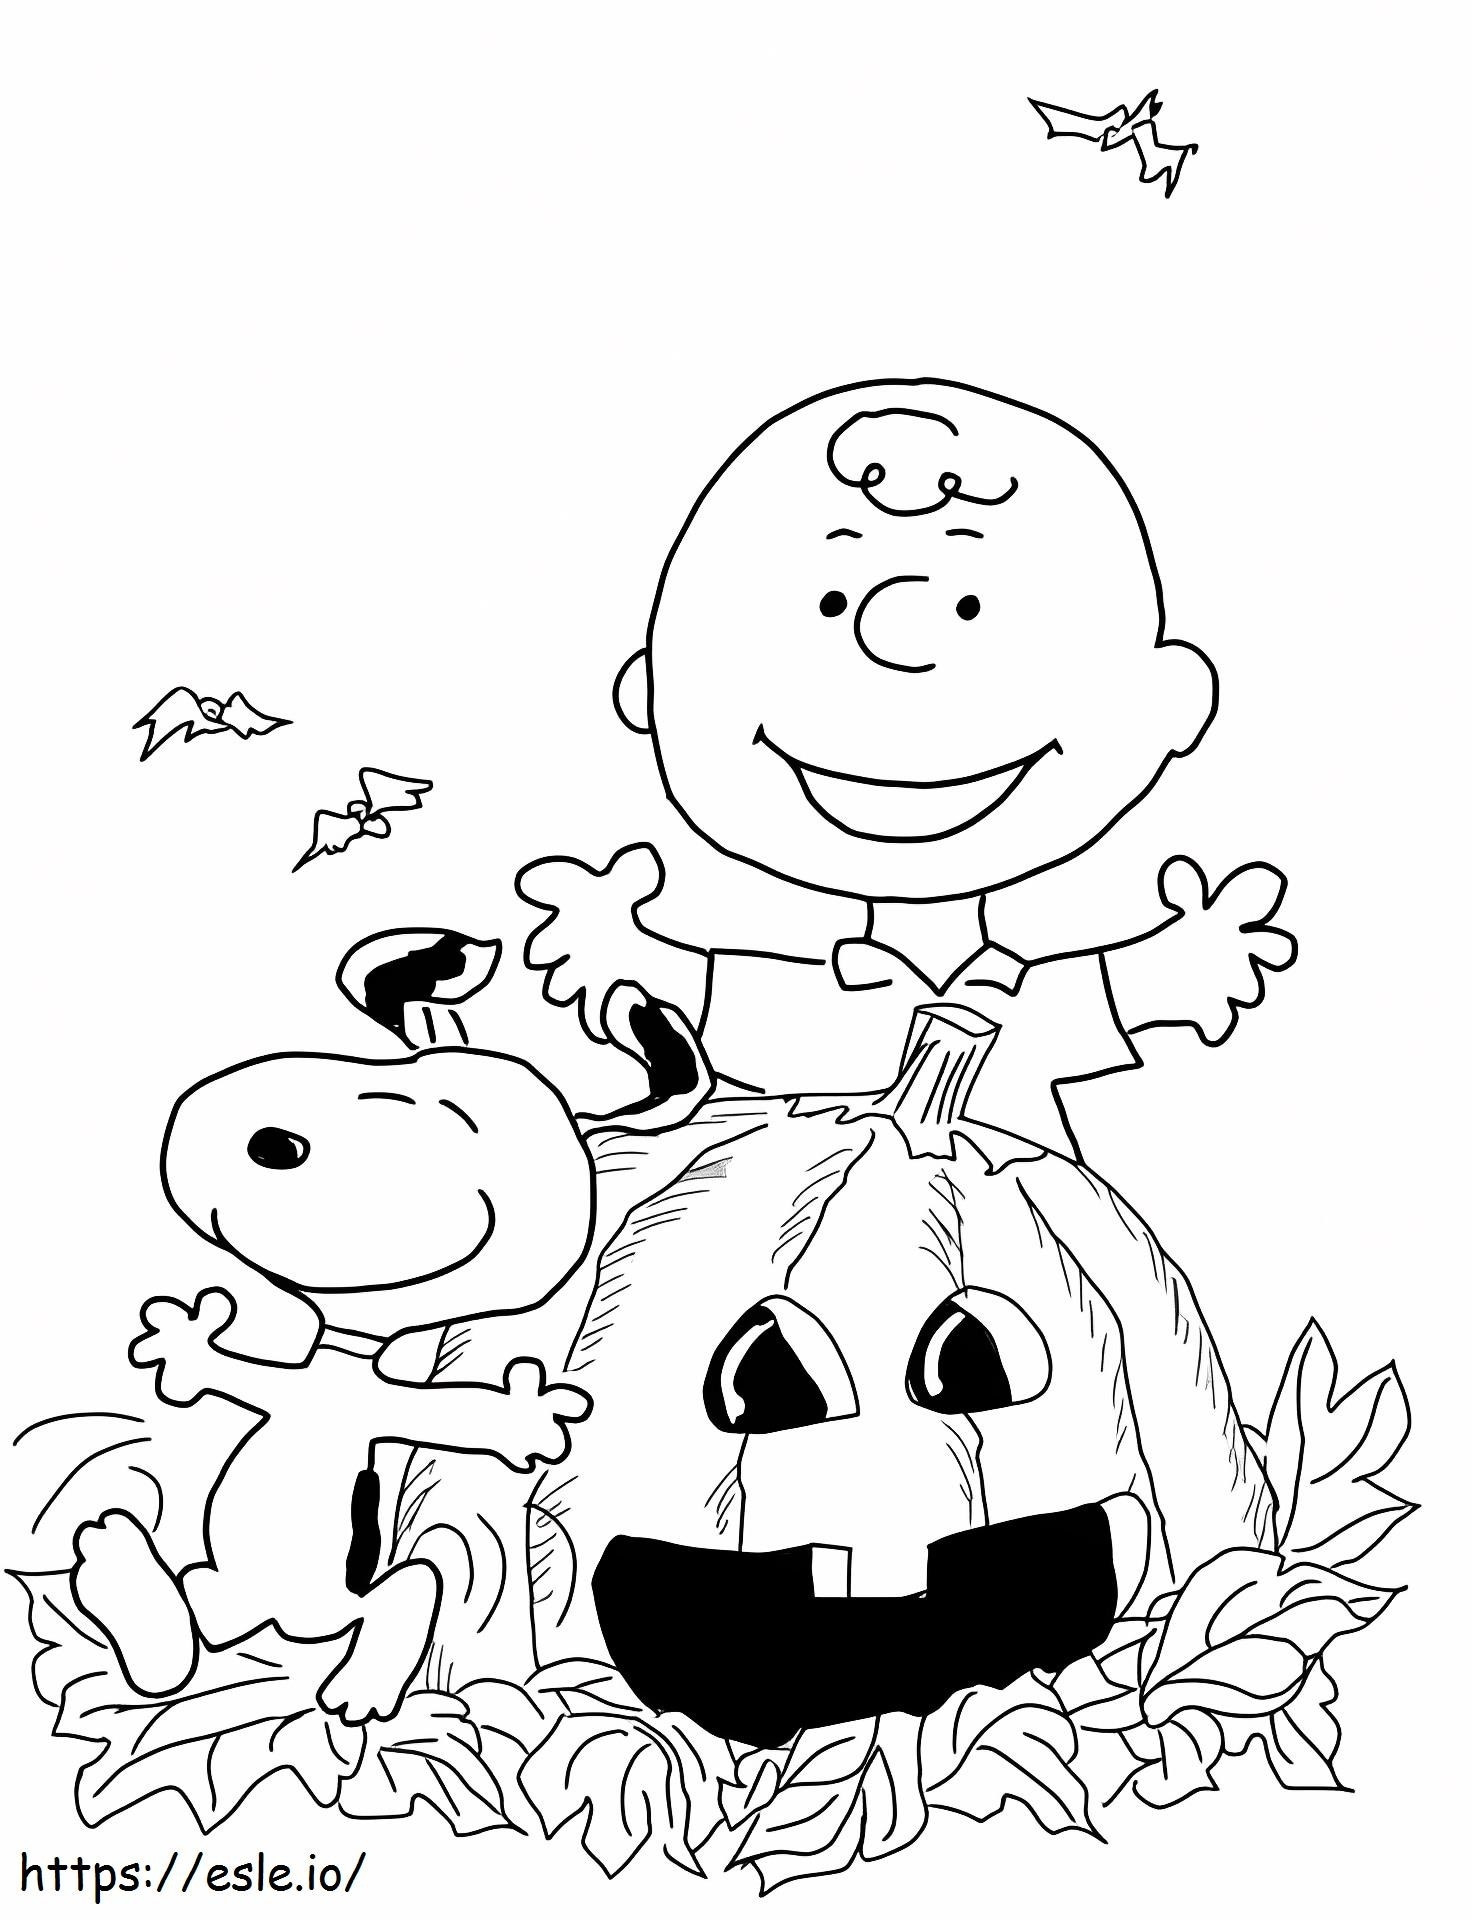 Charlie und Snoopy feiern Halloween ausmalbilder